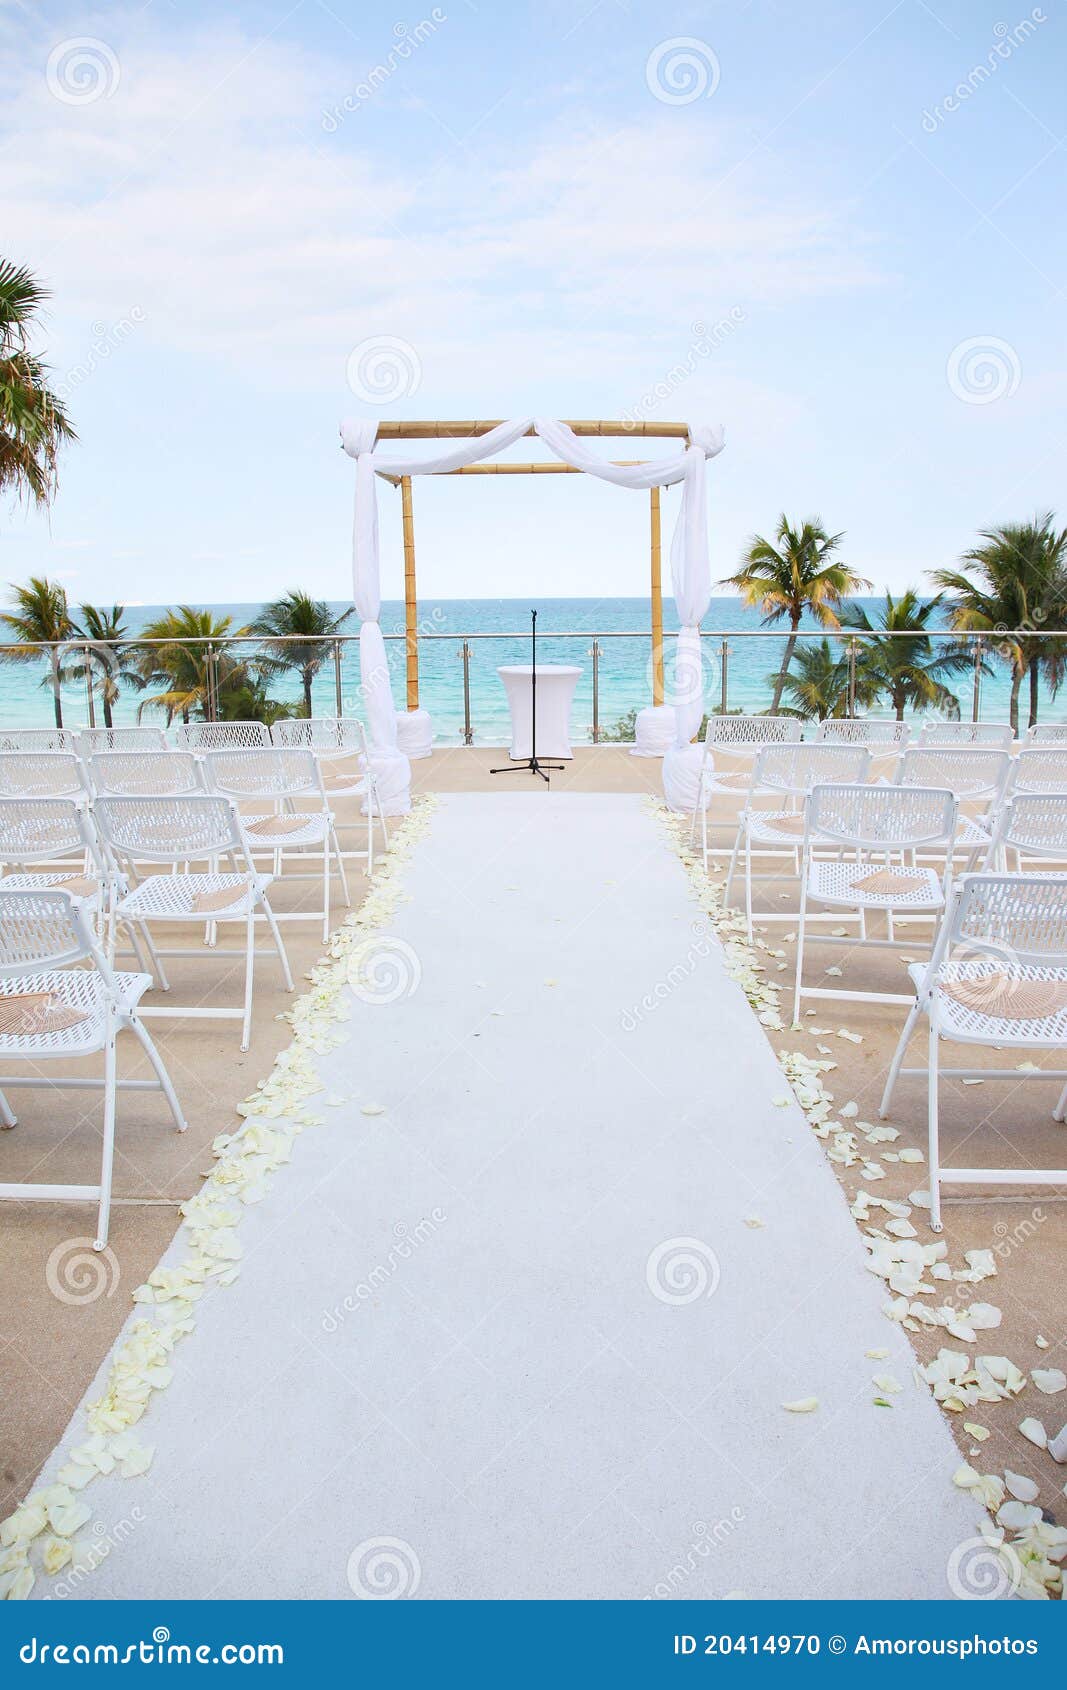 beach wedding - overlooking ocean